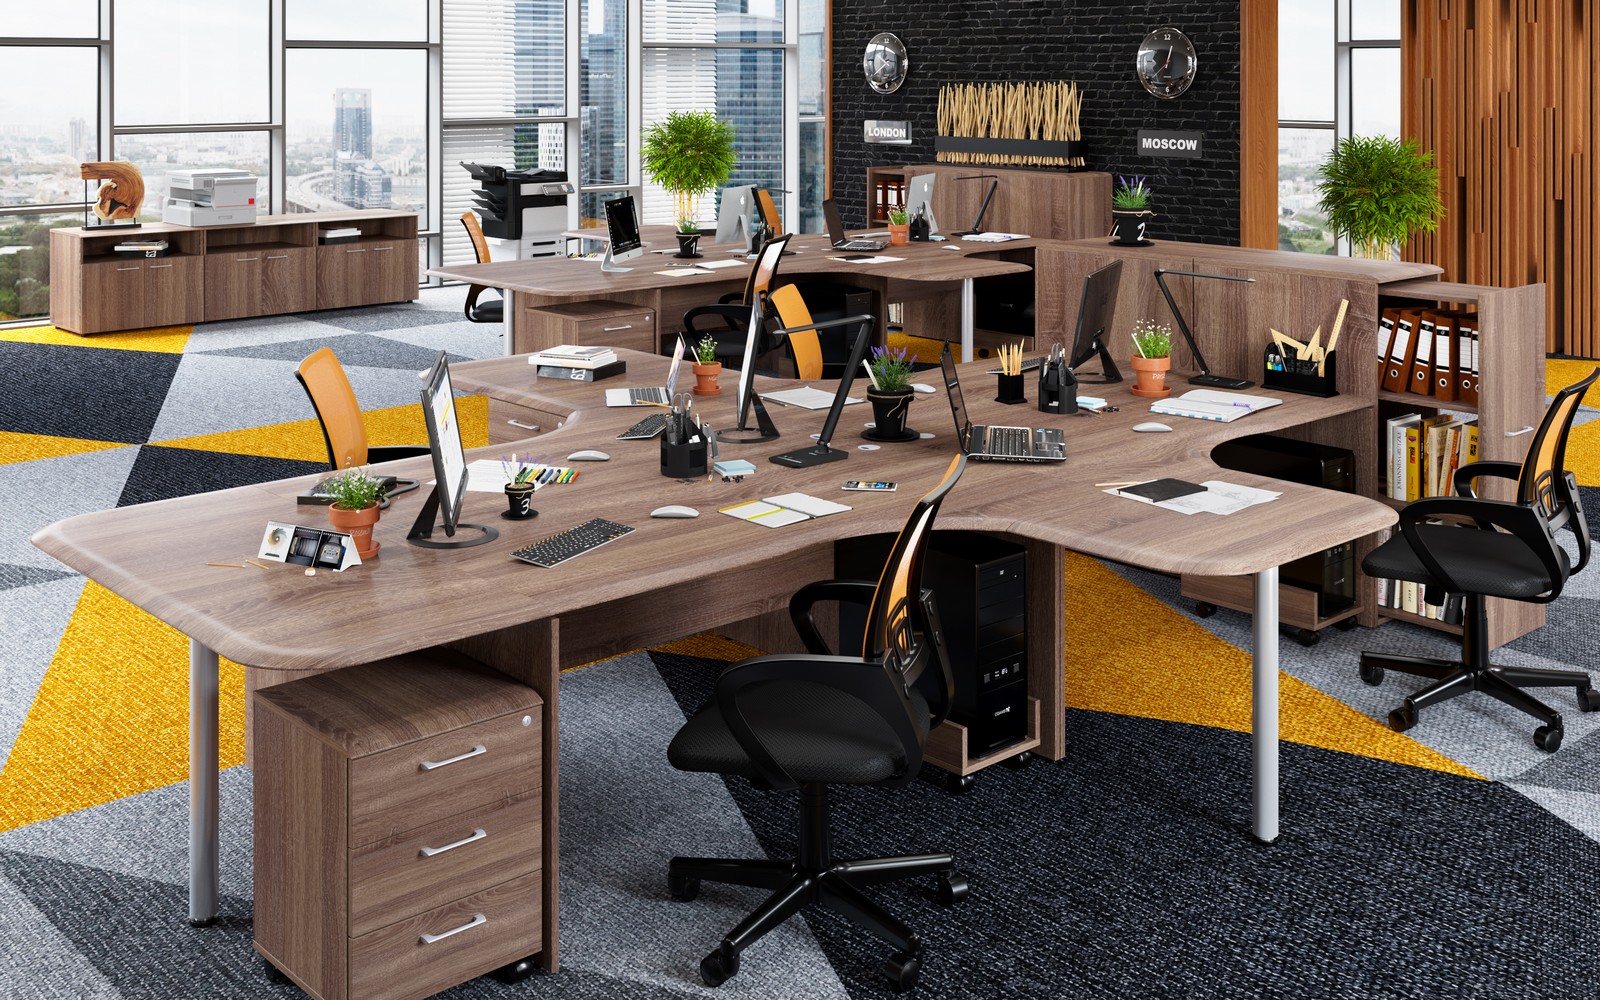 эргономичные офисные столы на дсп каркасе